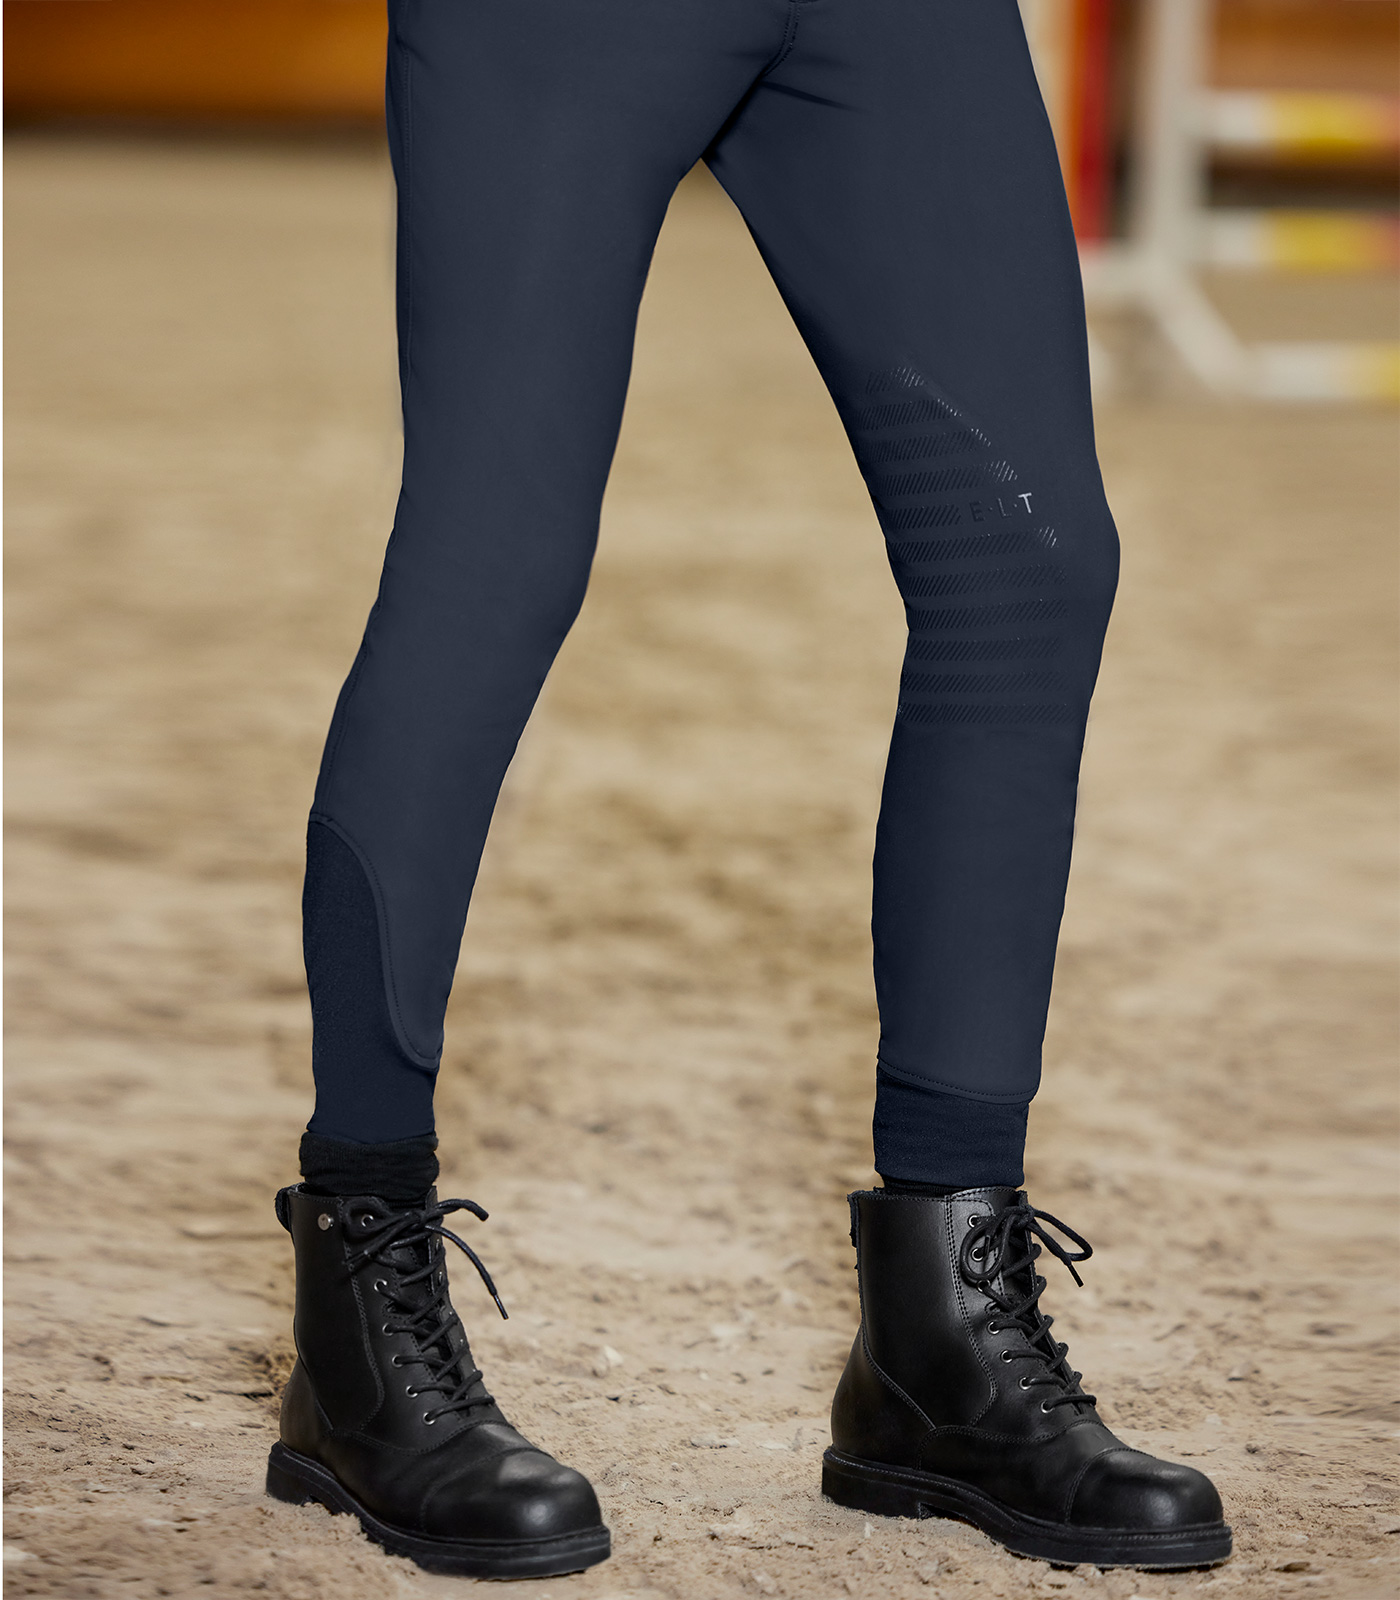 Pantaloni da equitazione Mailo con inserti in silicone sul ginocchio, da uomo